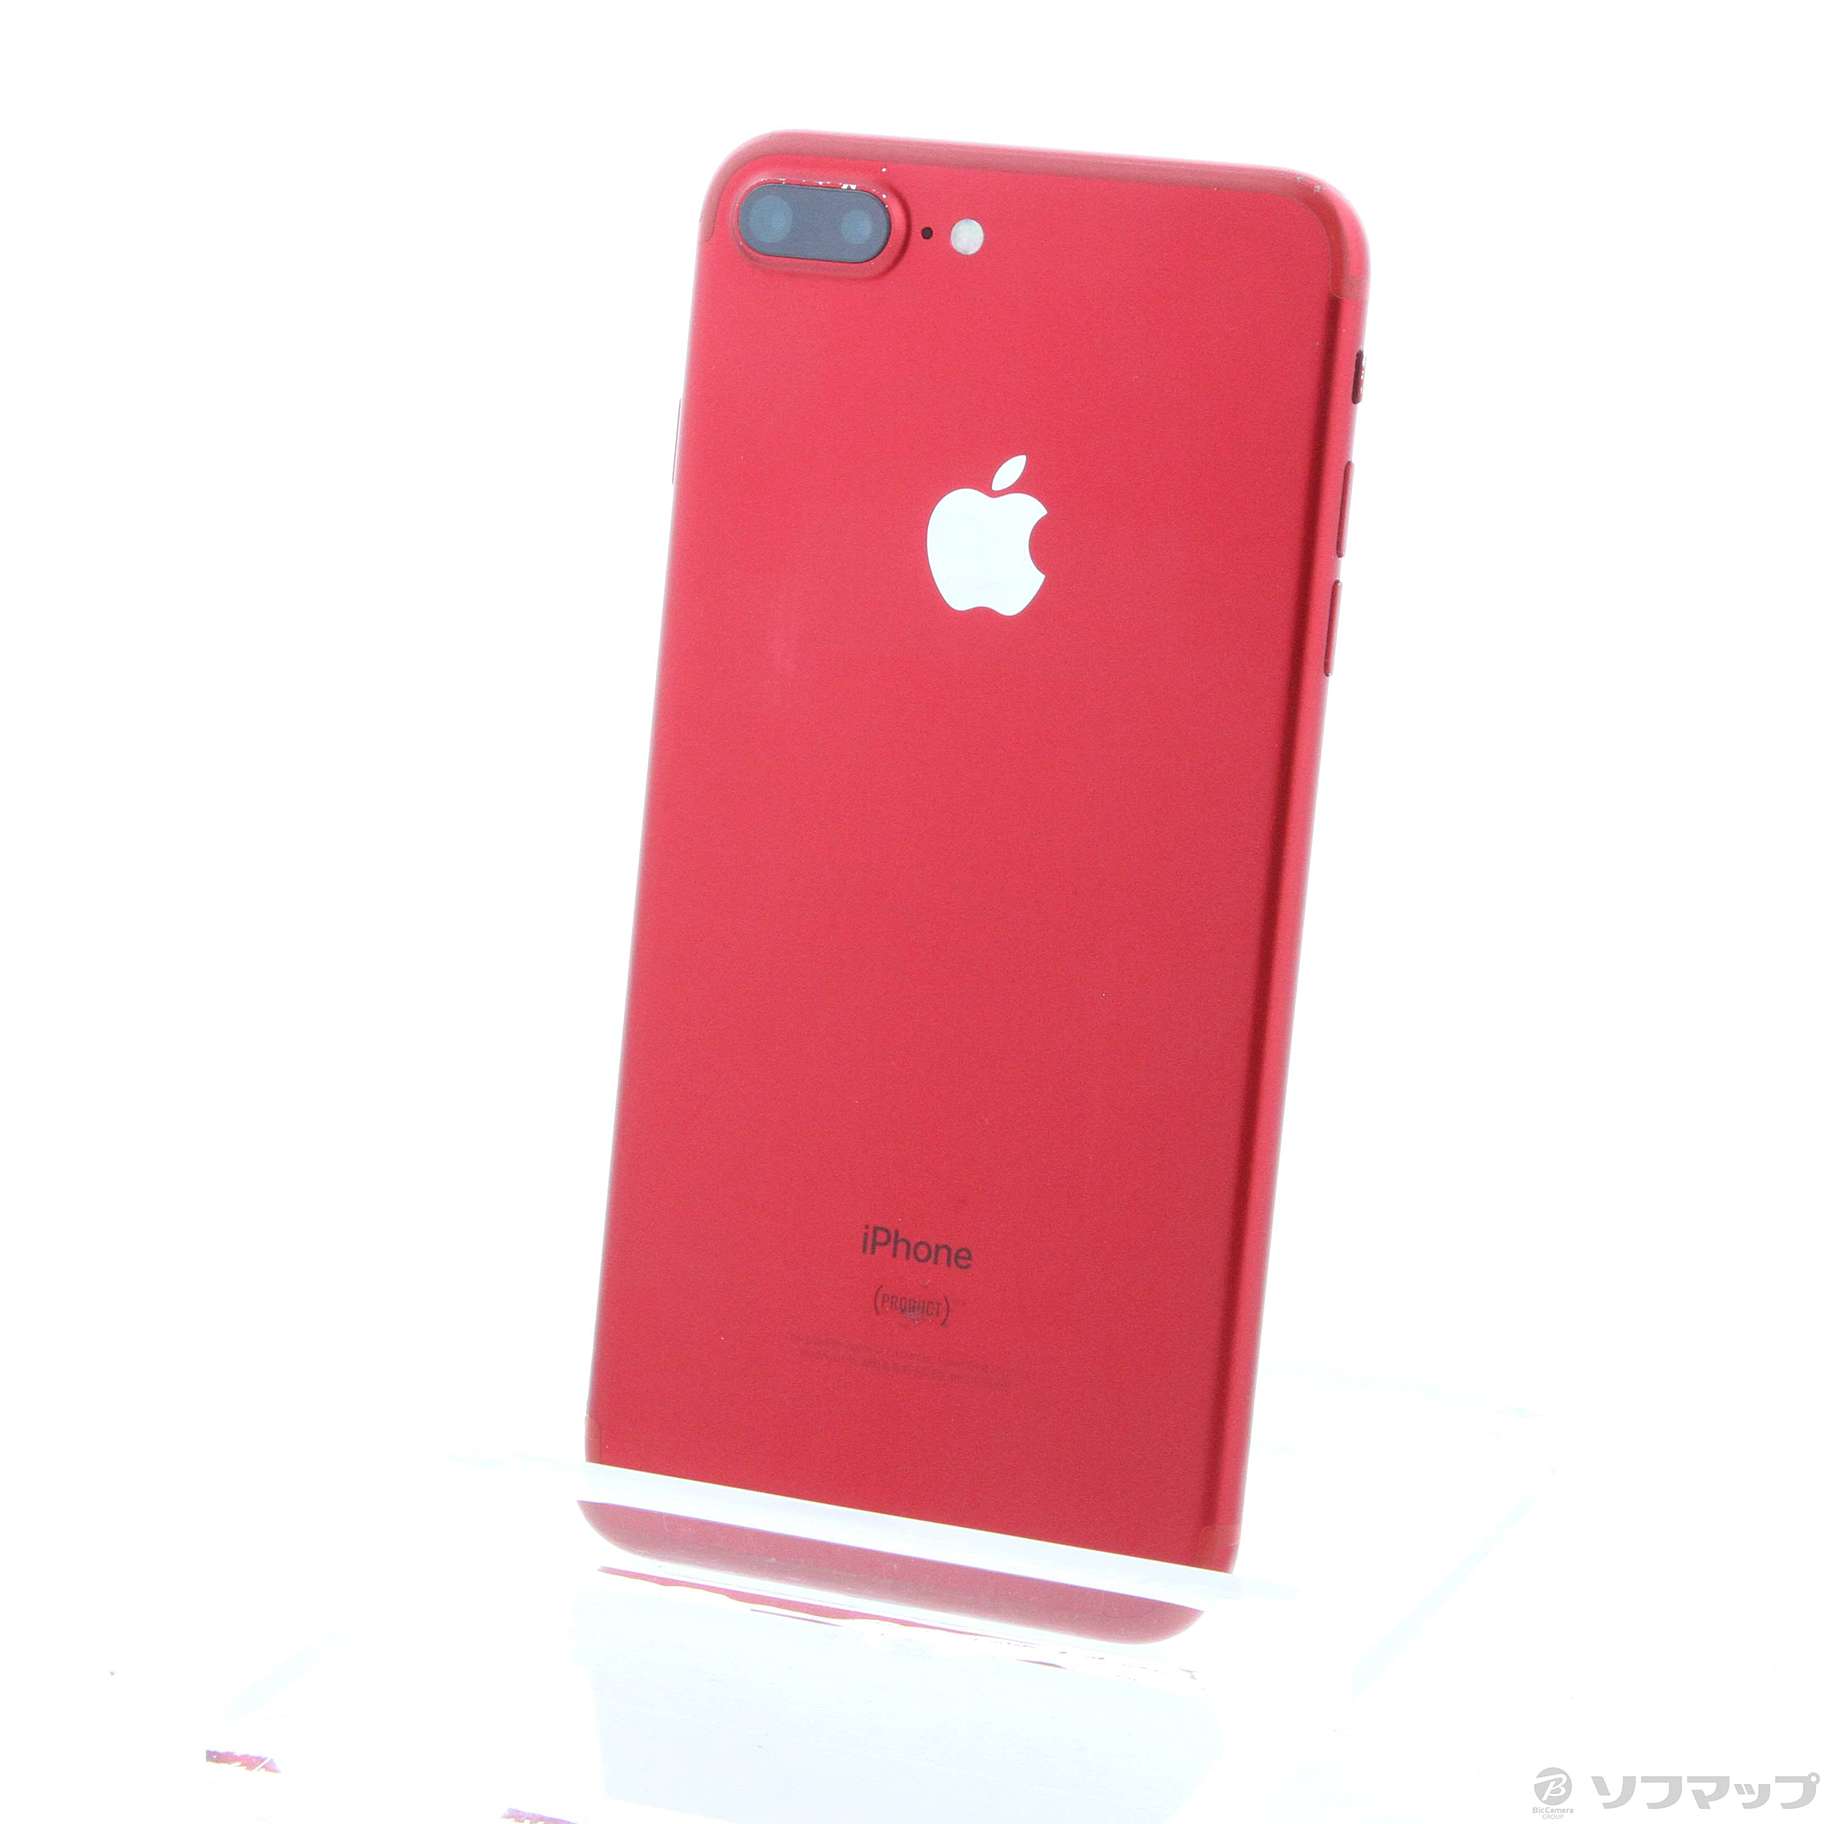 iPhone 7 plus 128GB RED